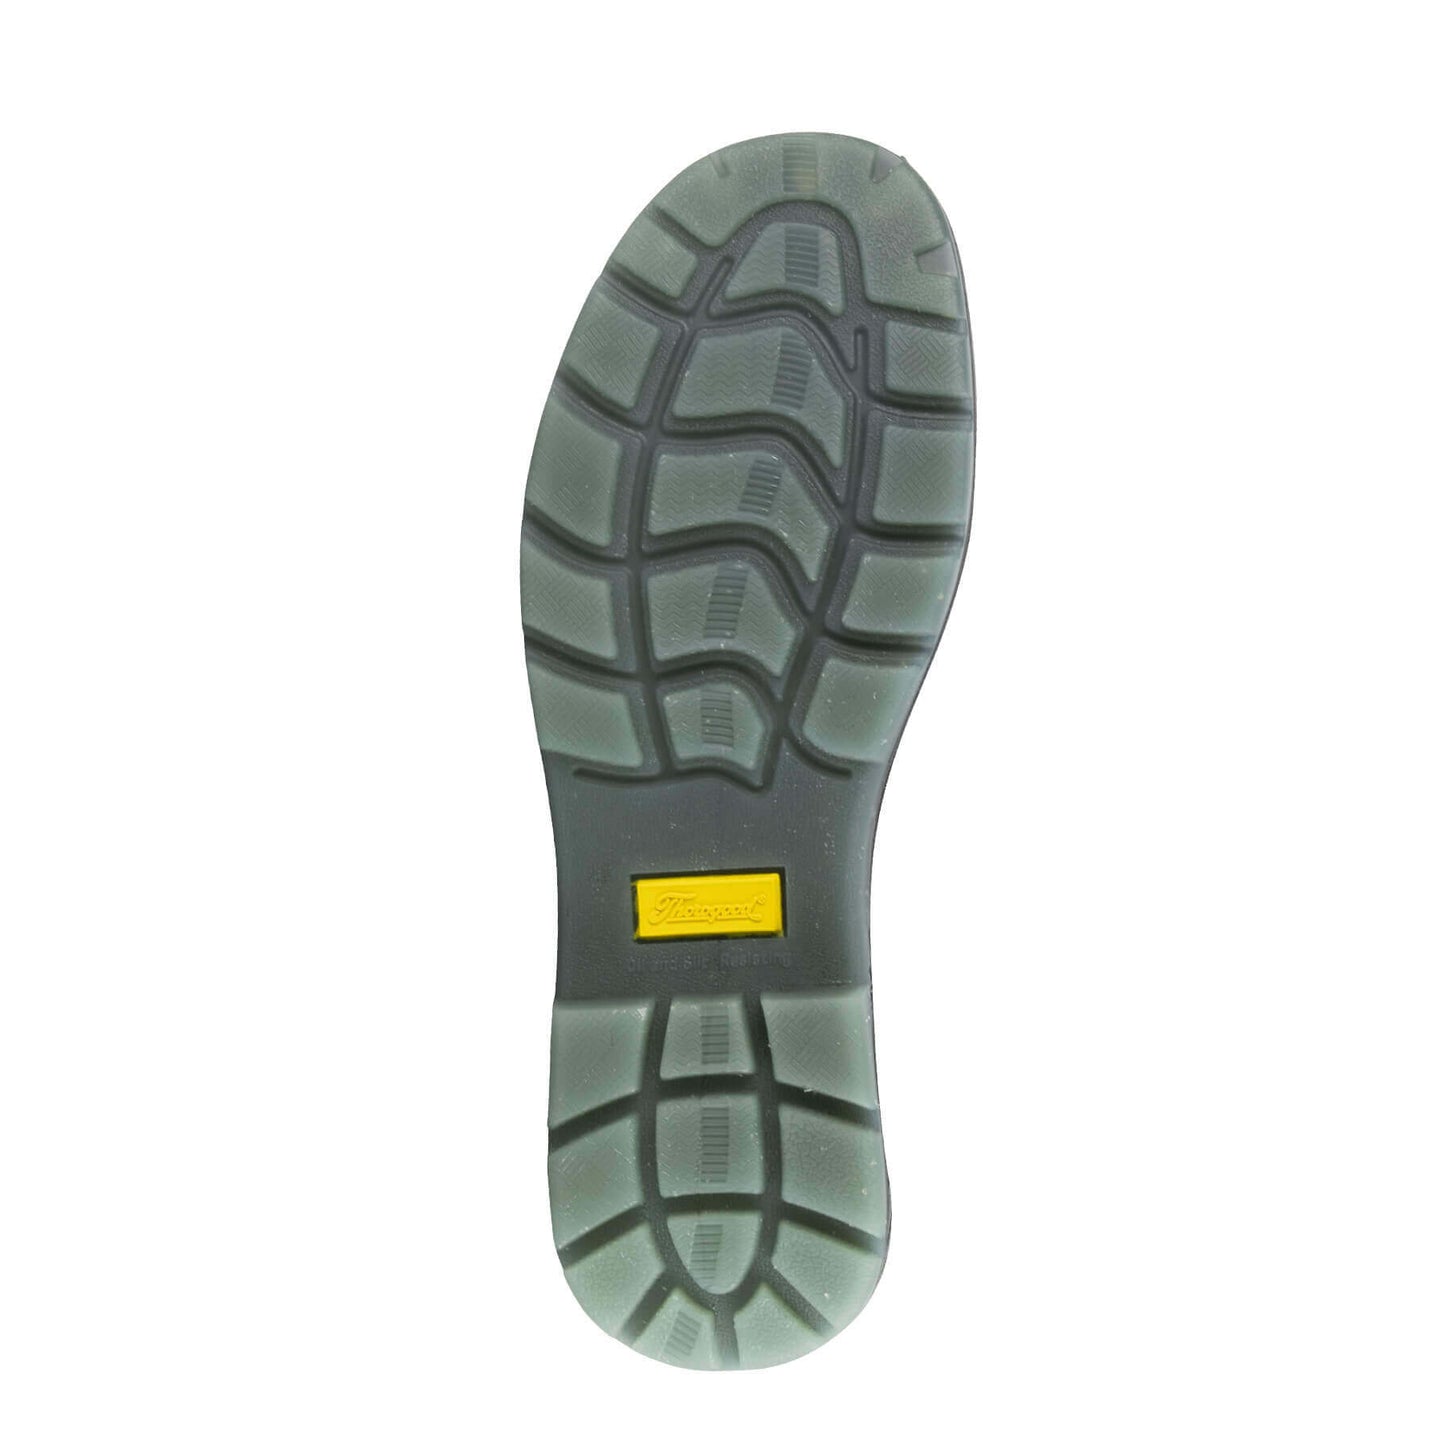 Thorogood Thoro-Flex 804-6133 Slip-On Safety Toe - Black